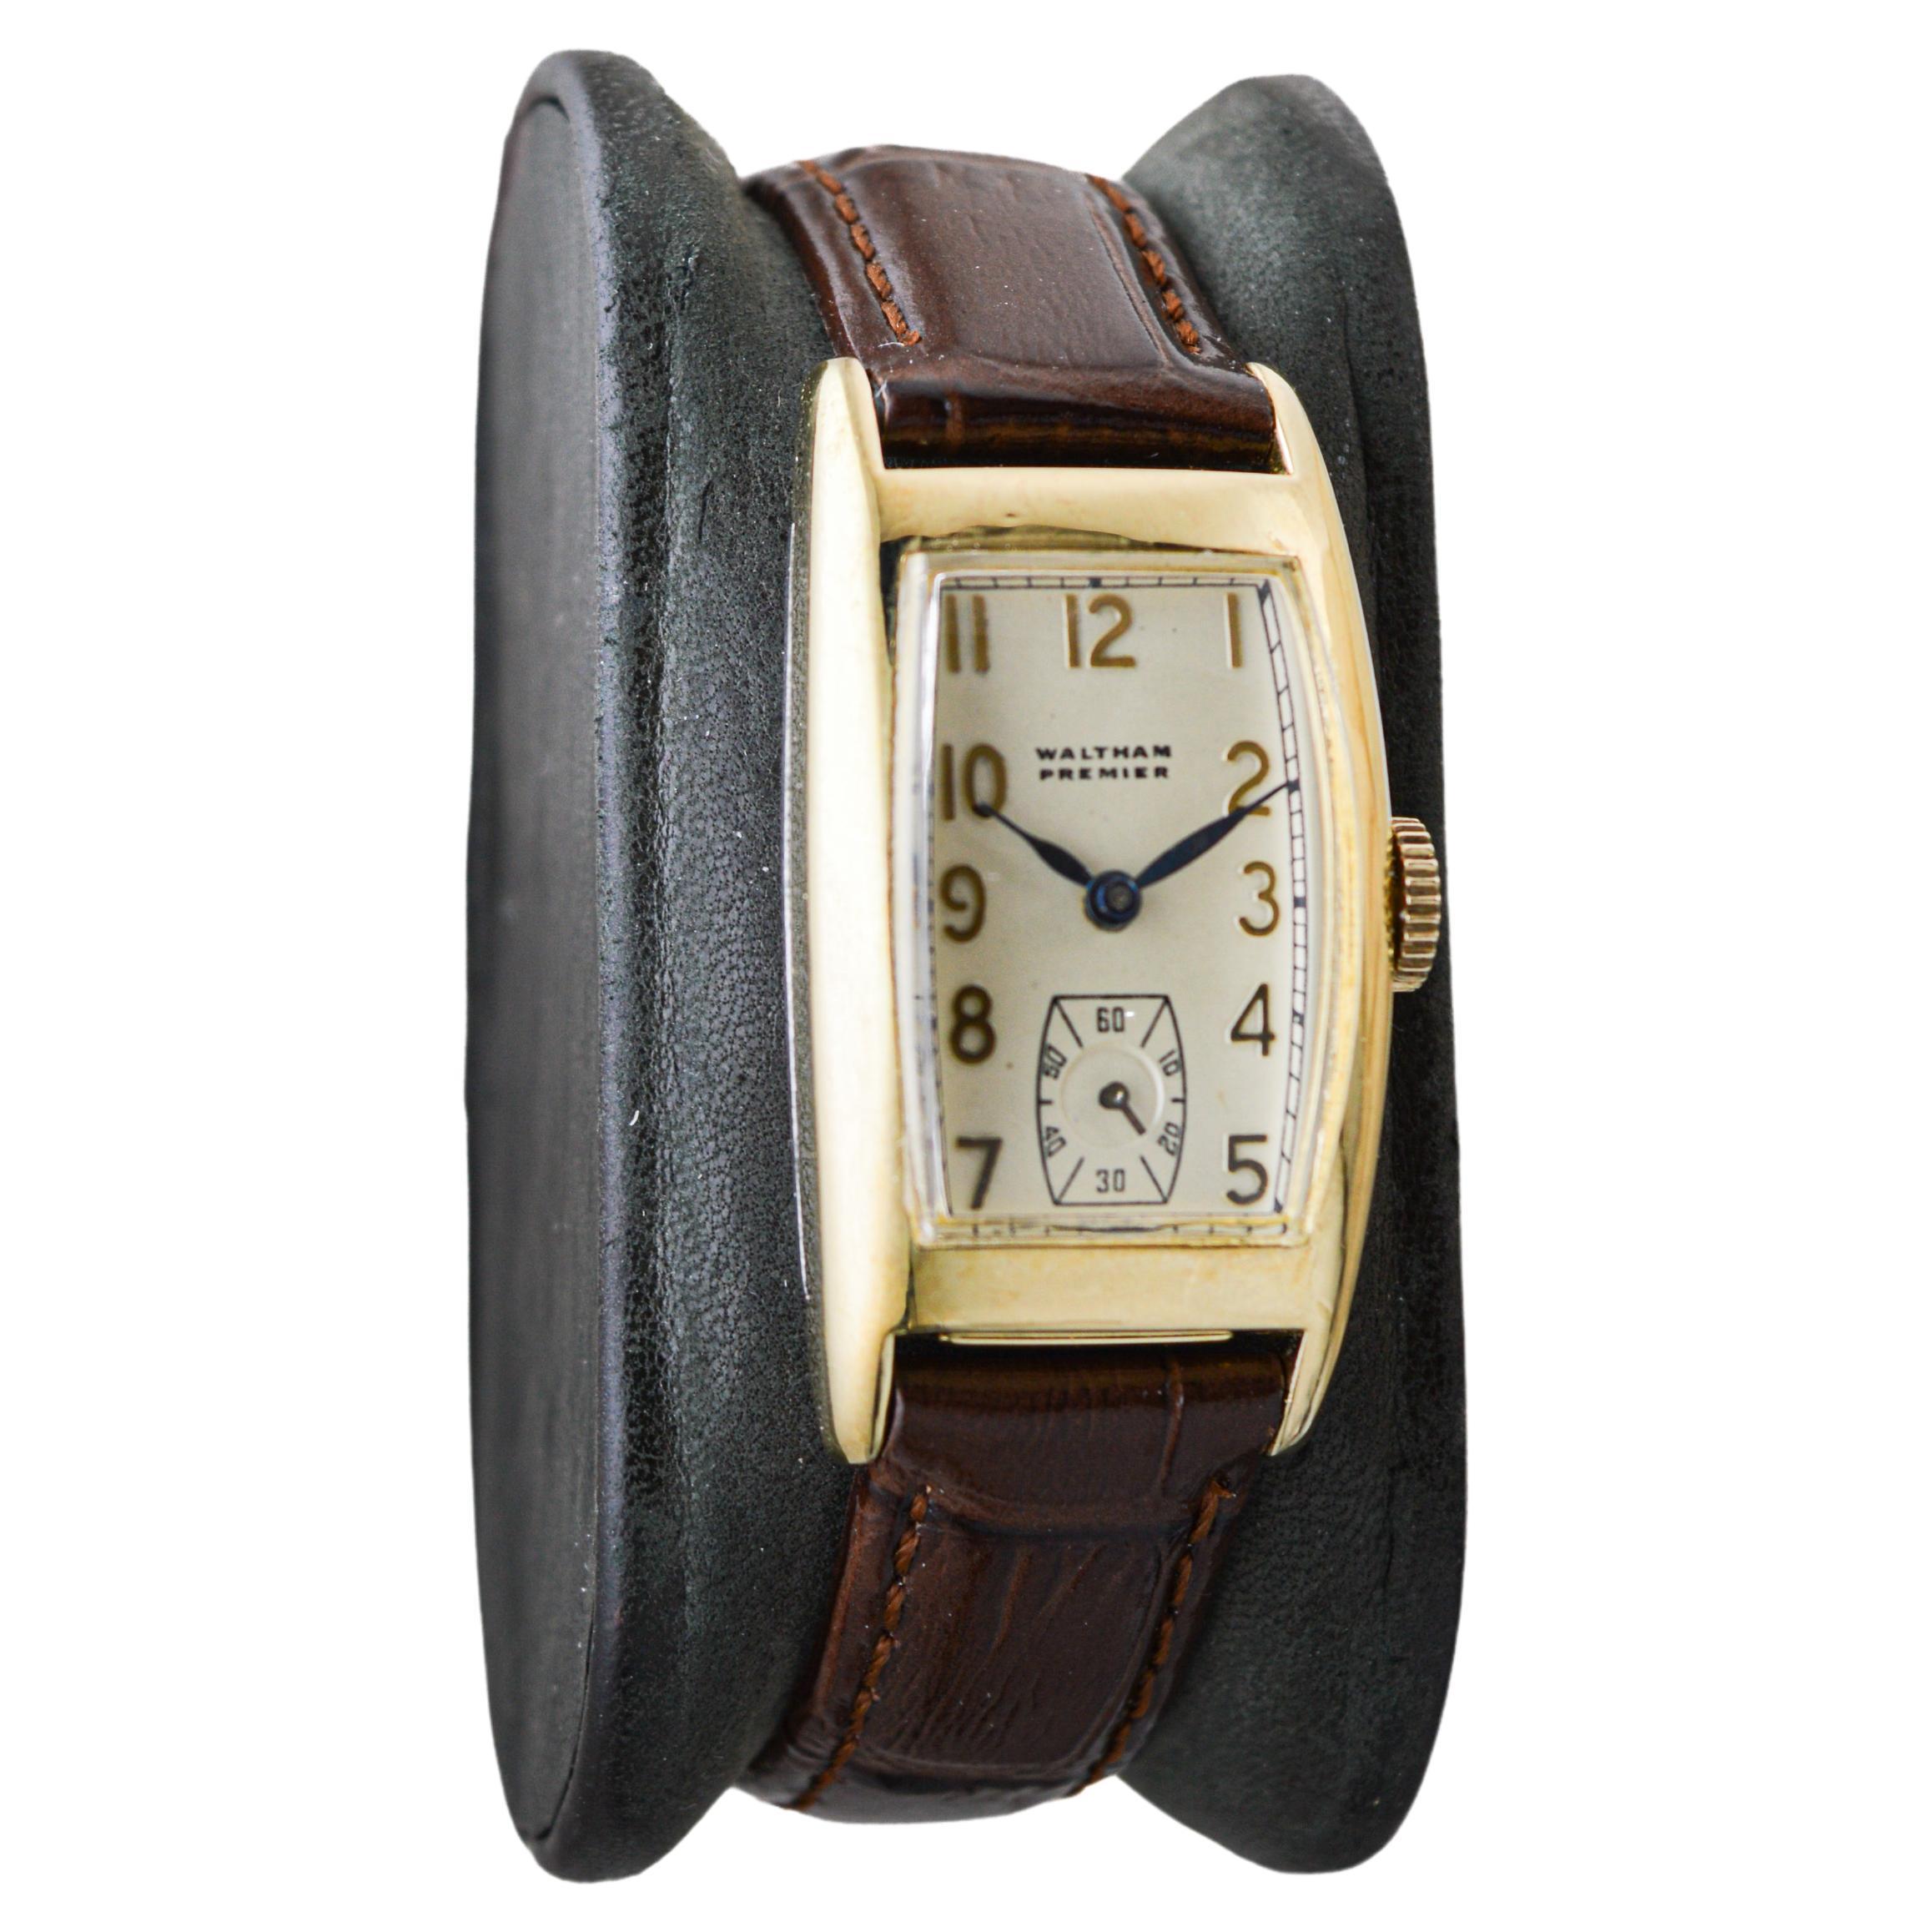 FABRIK / HAUS: Waltham Watch Company
STIL / REFERENZ: Art Deco / Premier
METALL / MATERIAL: Gelbgold gefüllt
CIRCA / JAHR: 1940er Jahre
ABMESSUNGEN / GRÖSSE: Länge 39mm X Durchmesser 21mm
UHRWERK / KALIBER: Handaufzug / 9 Jewels / Kaliber 740